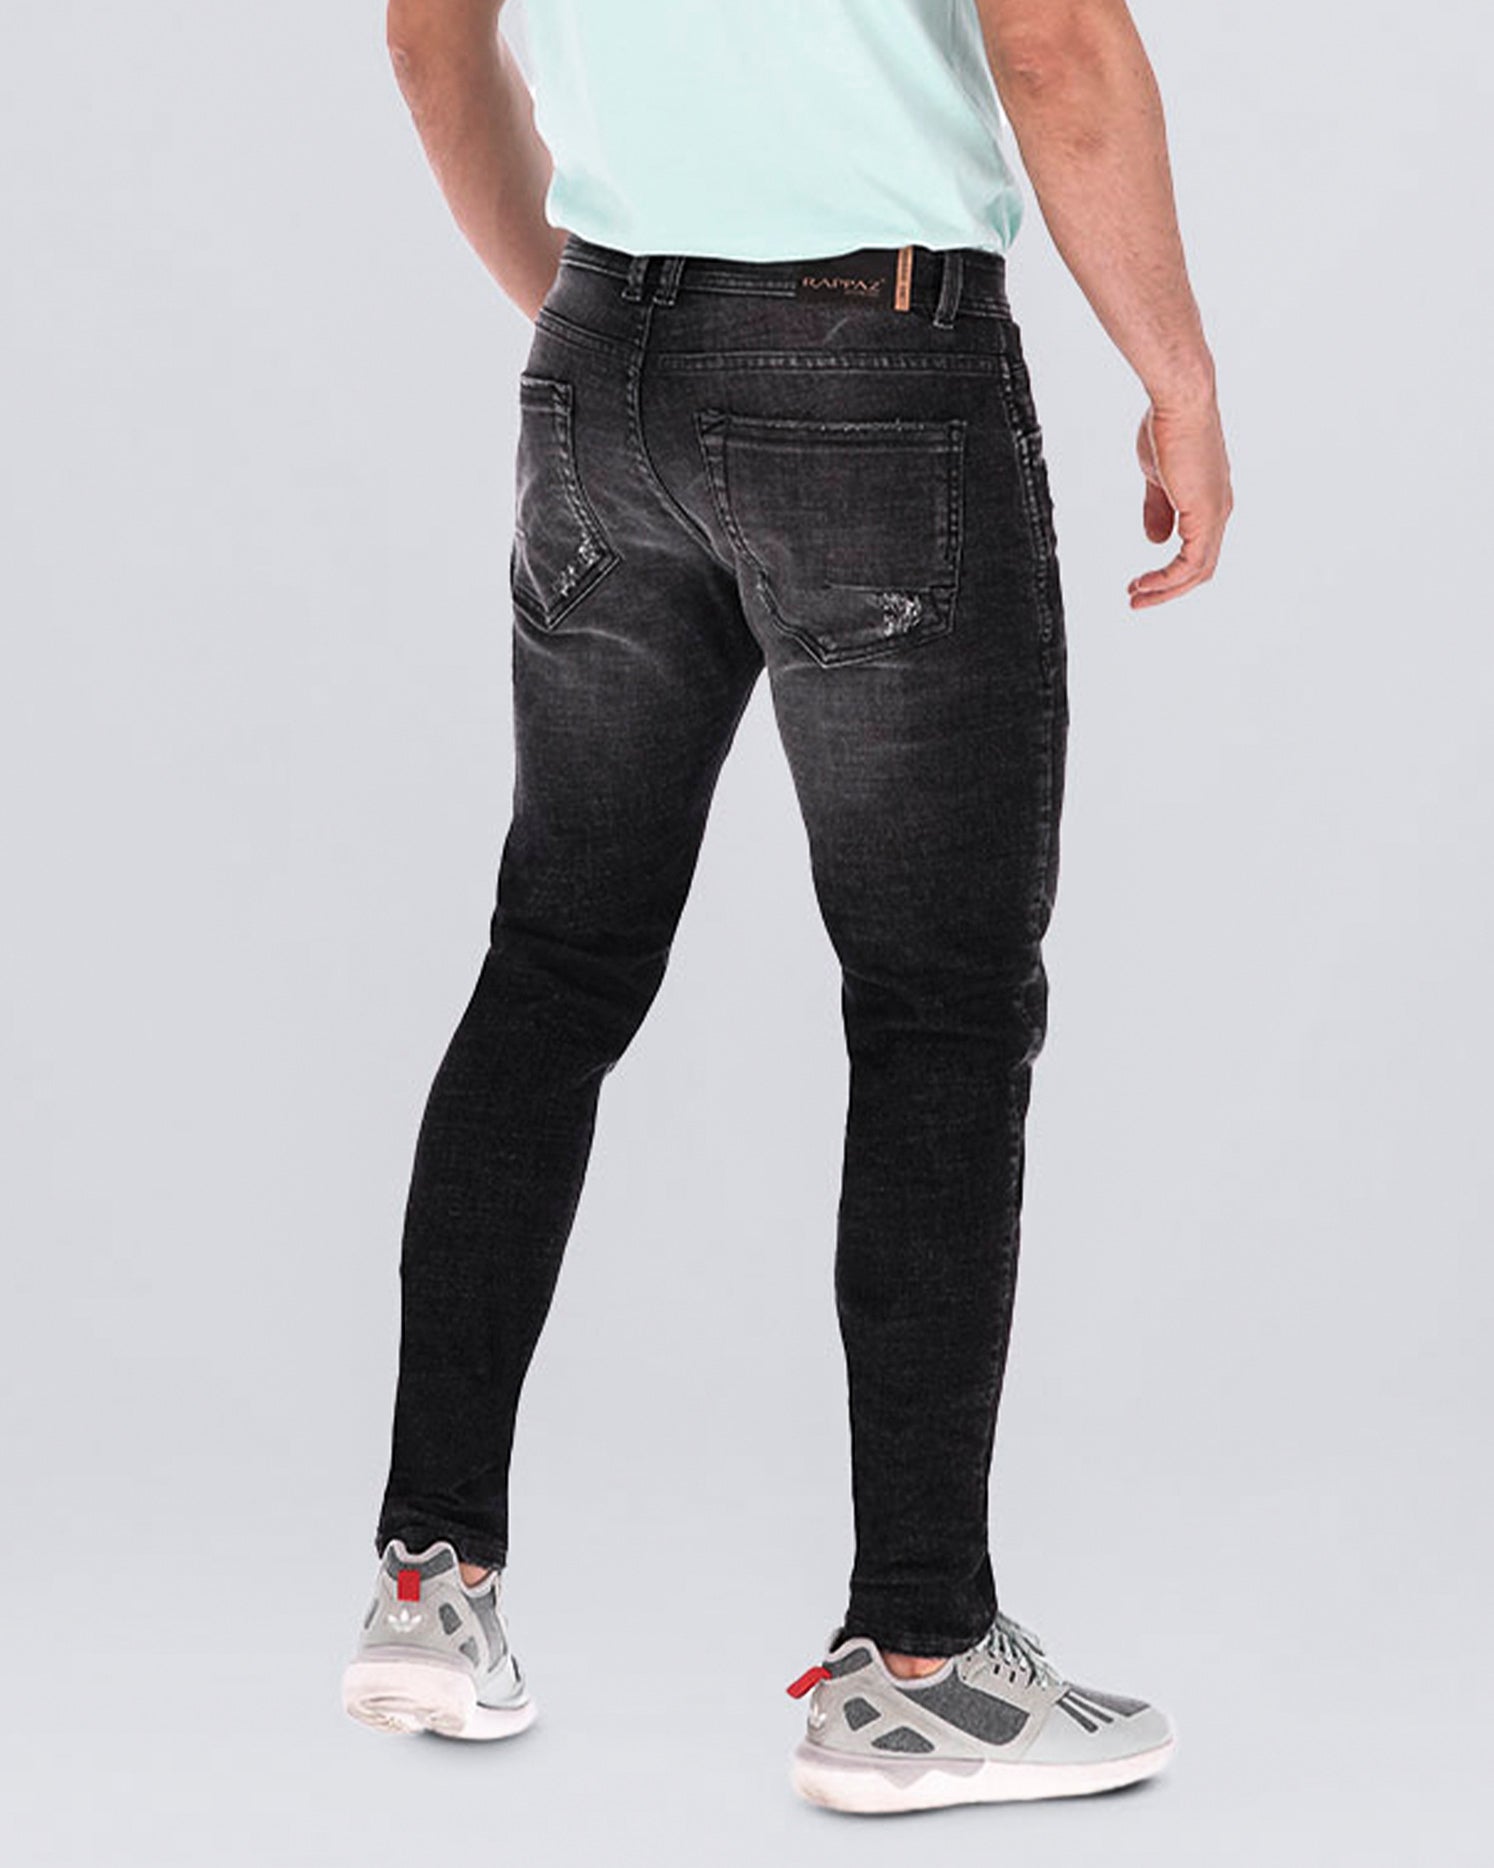 Jean skinny color gris oscuro, bolsillos laterales y posteriores funcionales, poco desgates. Una prenda confeccionada en Algodón, Poliéster, Rayón y Elastano